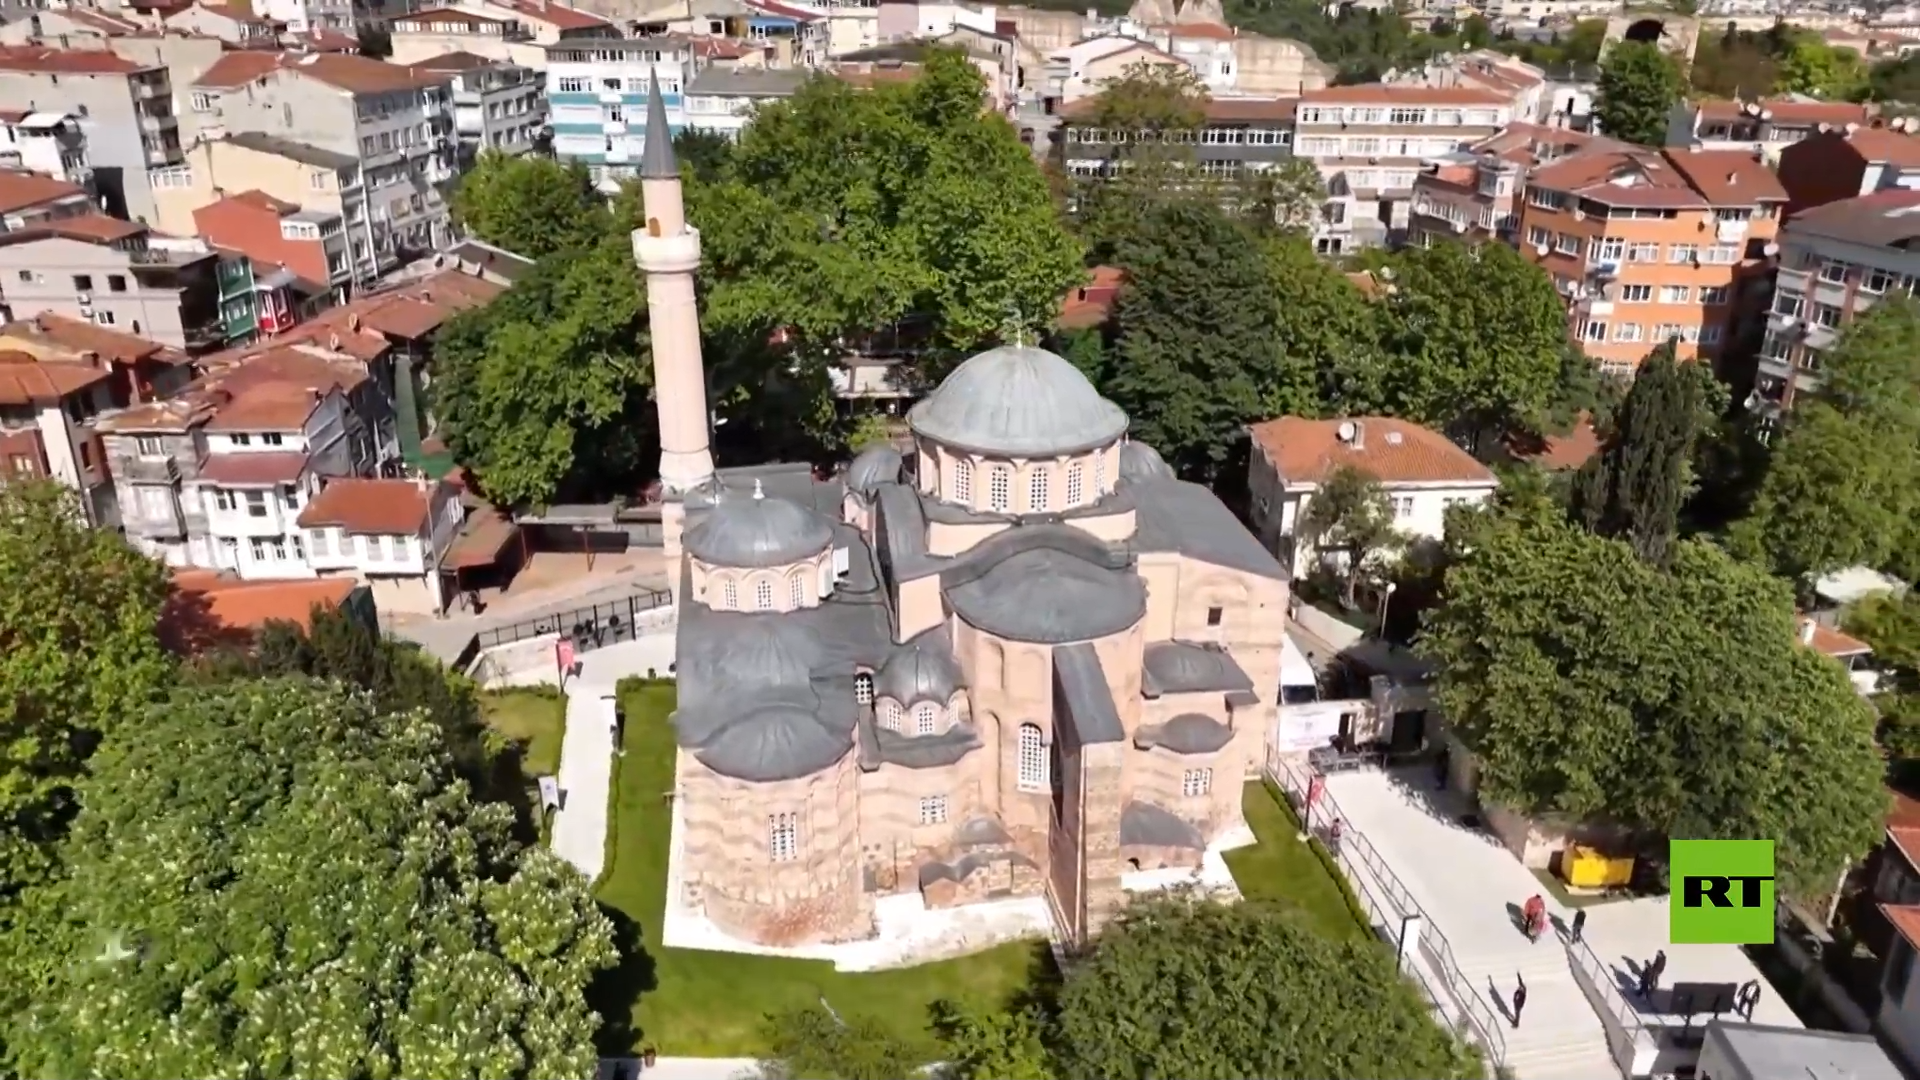 تركيا تدشن مسجدا كان كنيسة سابقة من العصر البيزنطي